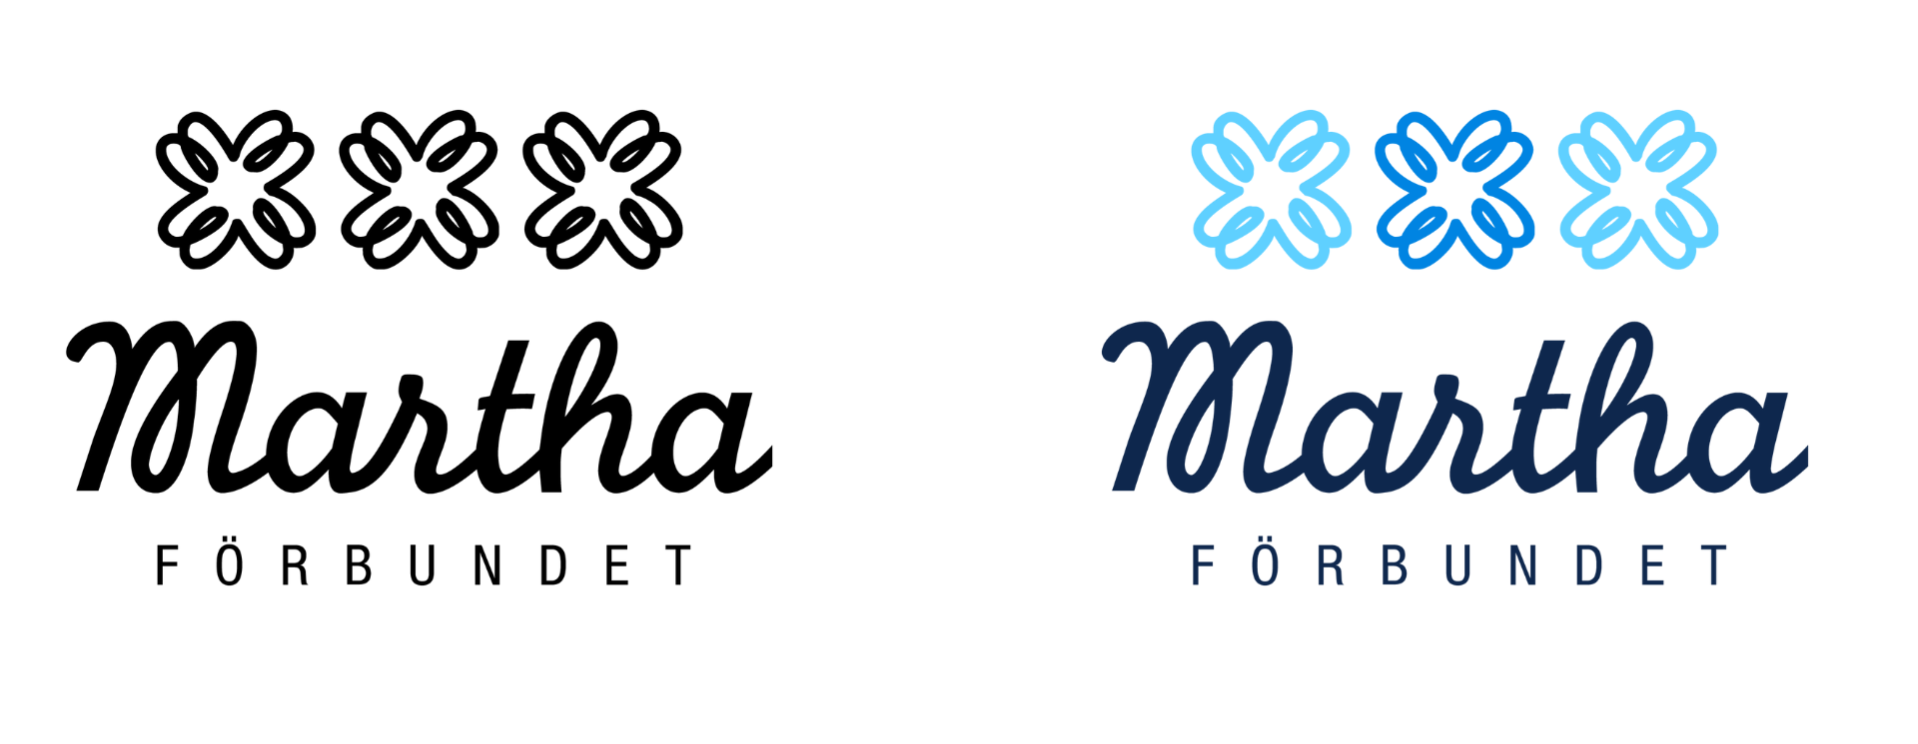 Marthaförbundets logotyper